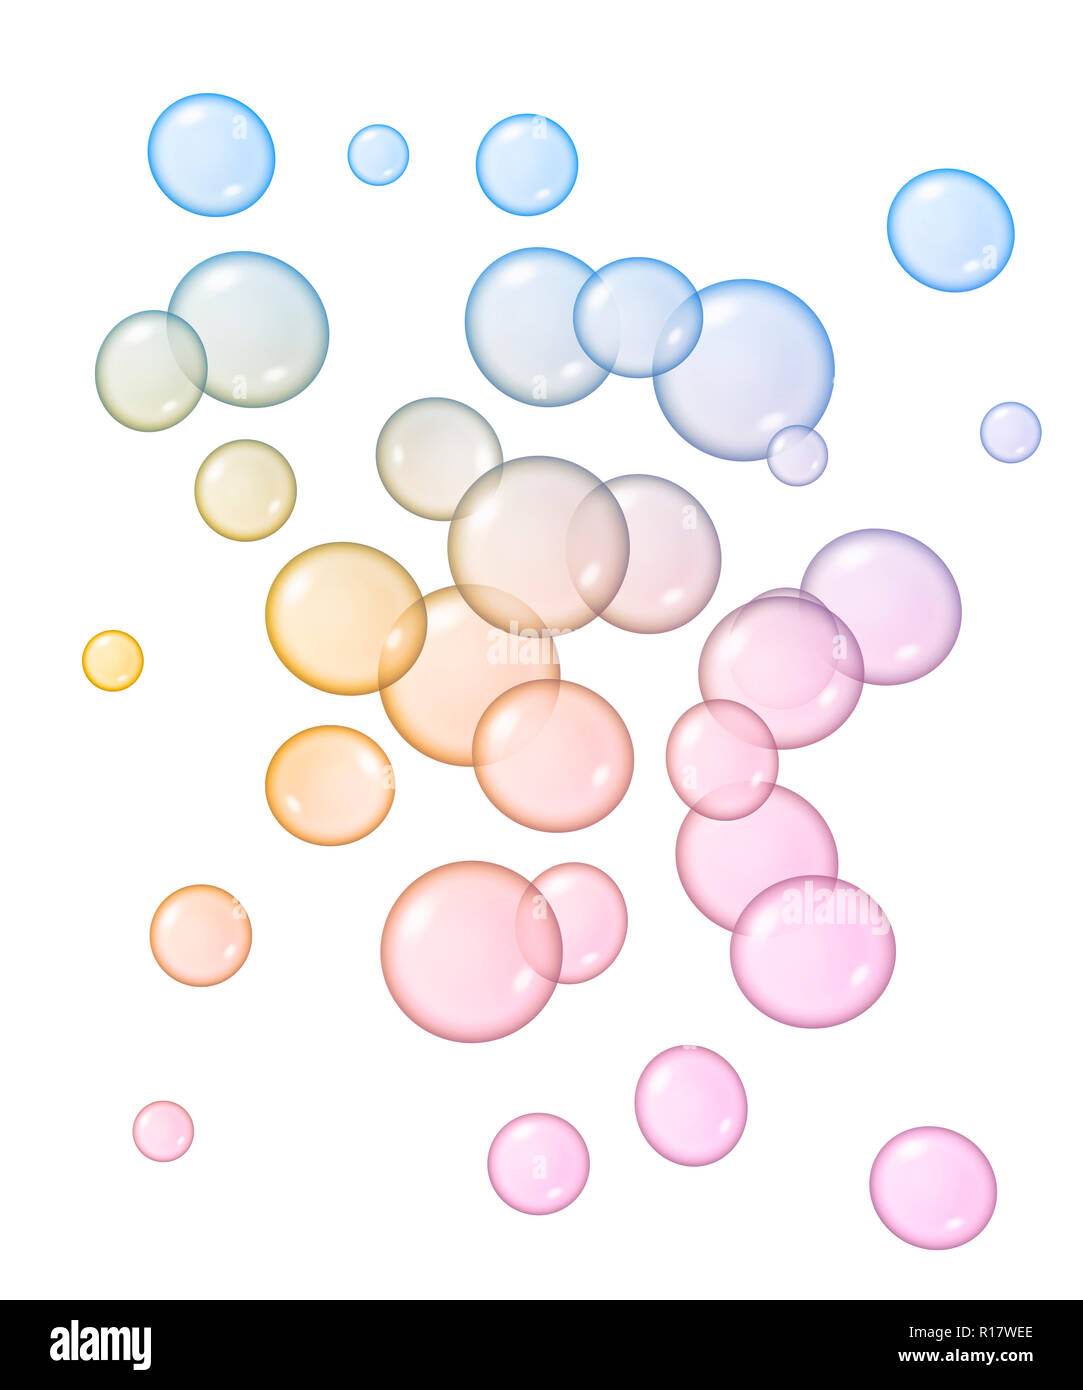 Immagine digitale di blu, rosa e giallo bolle di dimensioni differenti flottante, sfondo bianco Foto Stock